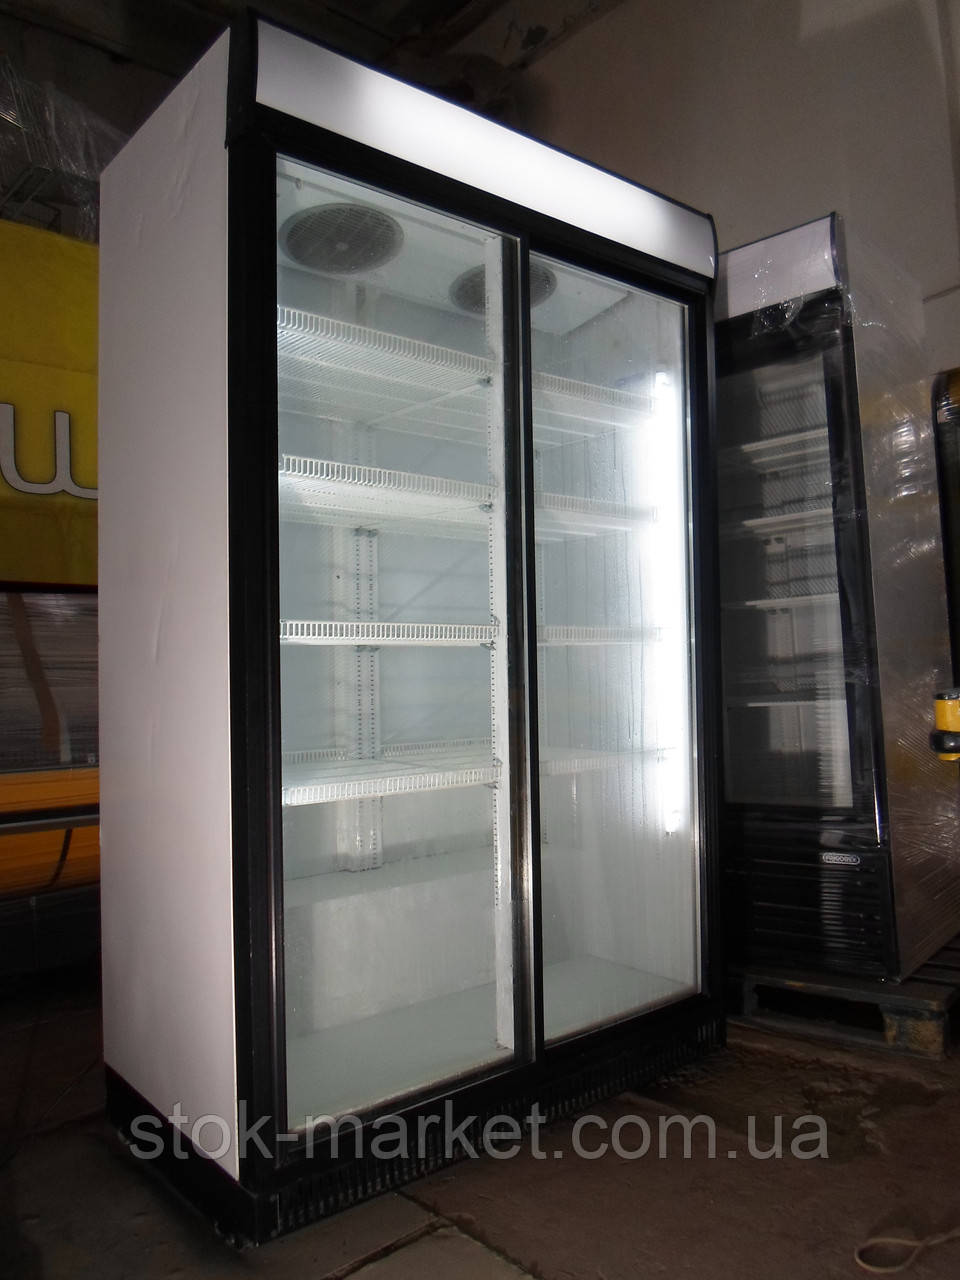 Холодильна шафа Ice Stream Extra Large б/у, холодильна шафа б у, вітрина холодна б у.